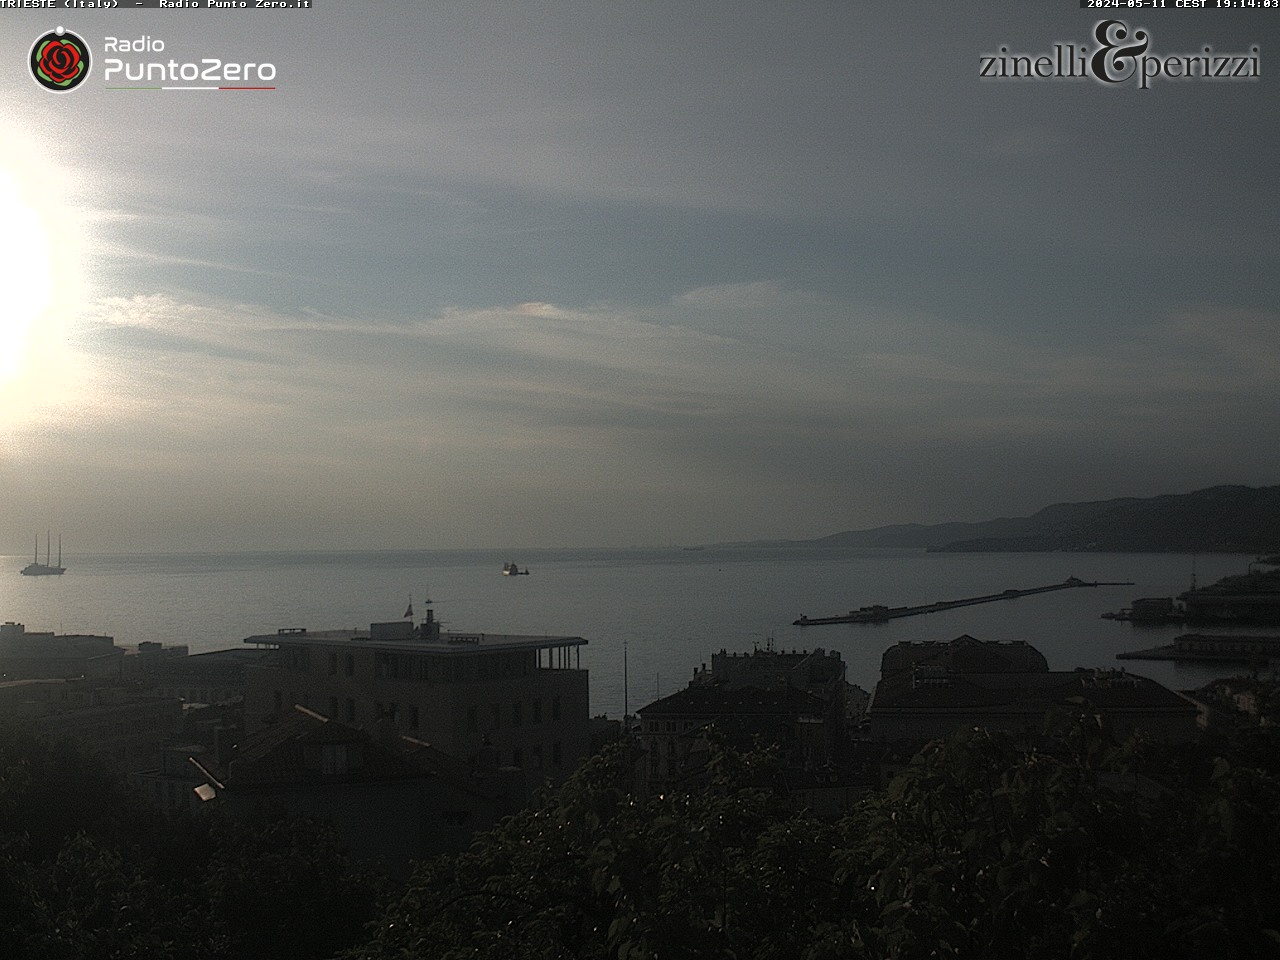 Trieste Di. 01:51